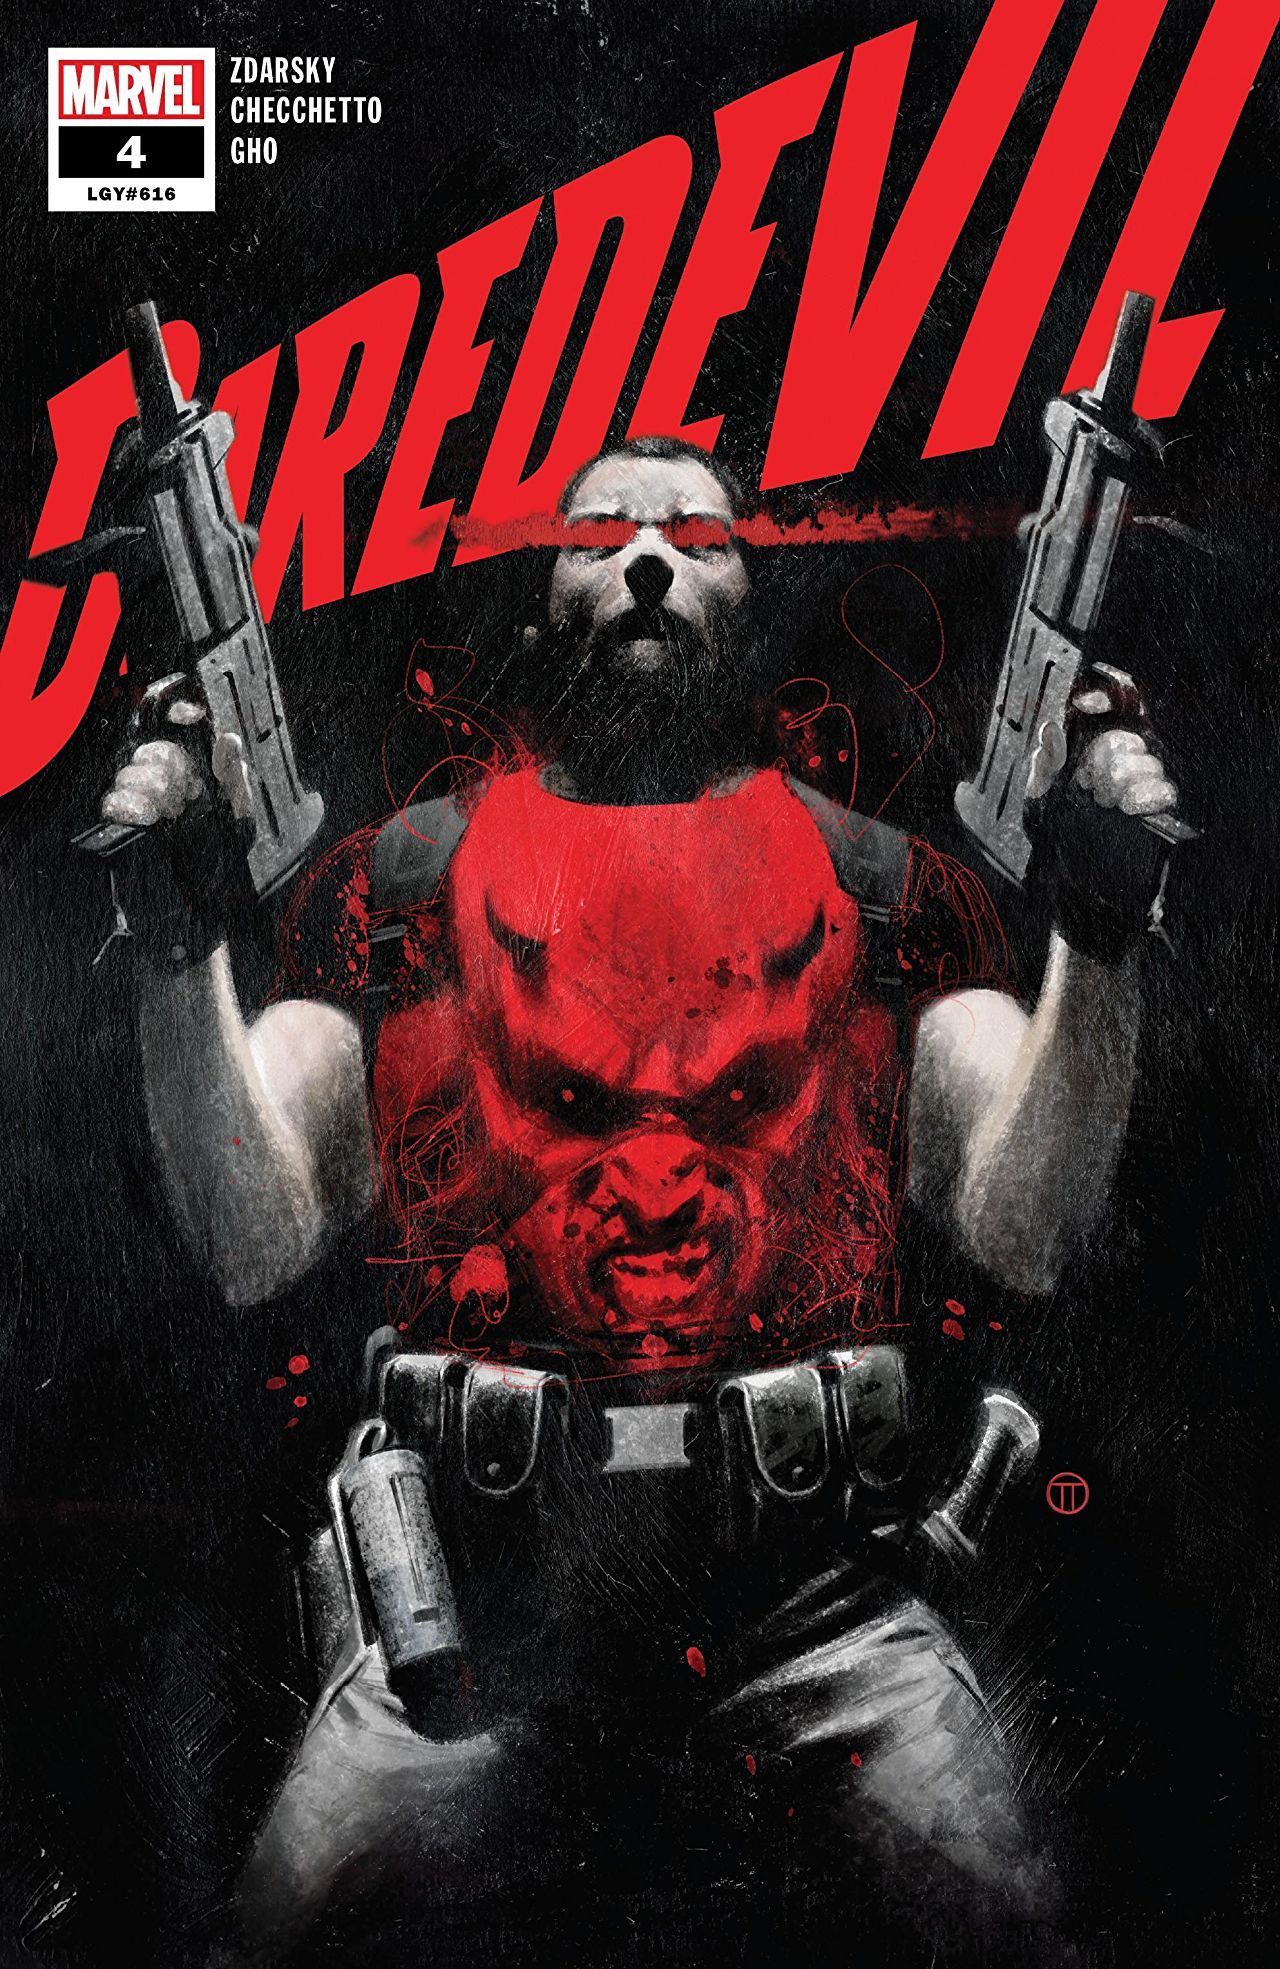 Daredevil #4 review: Punishing moralism